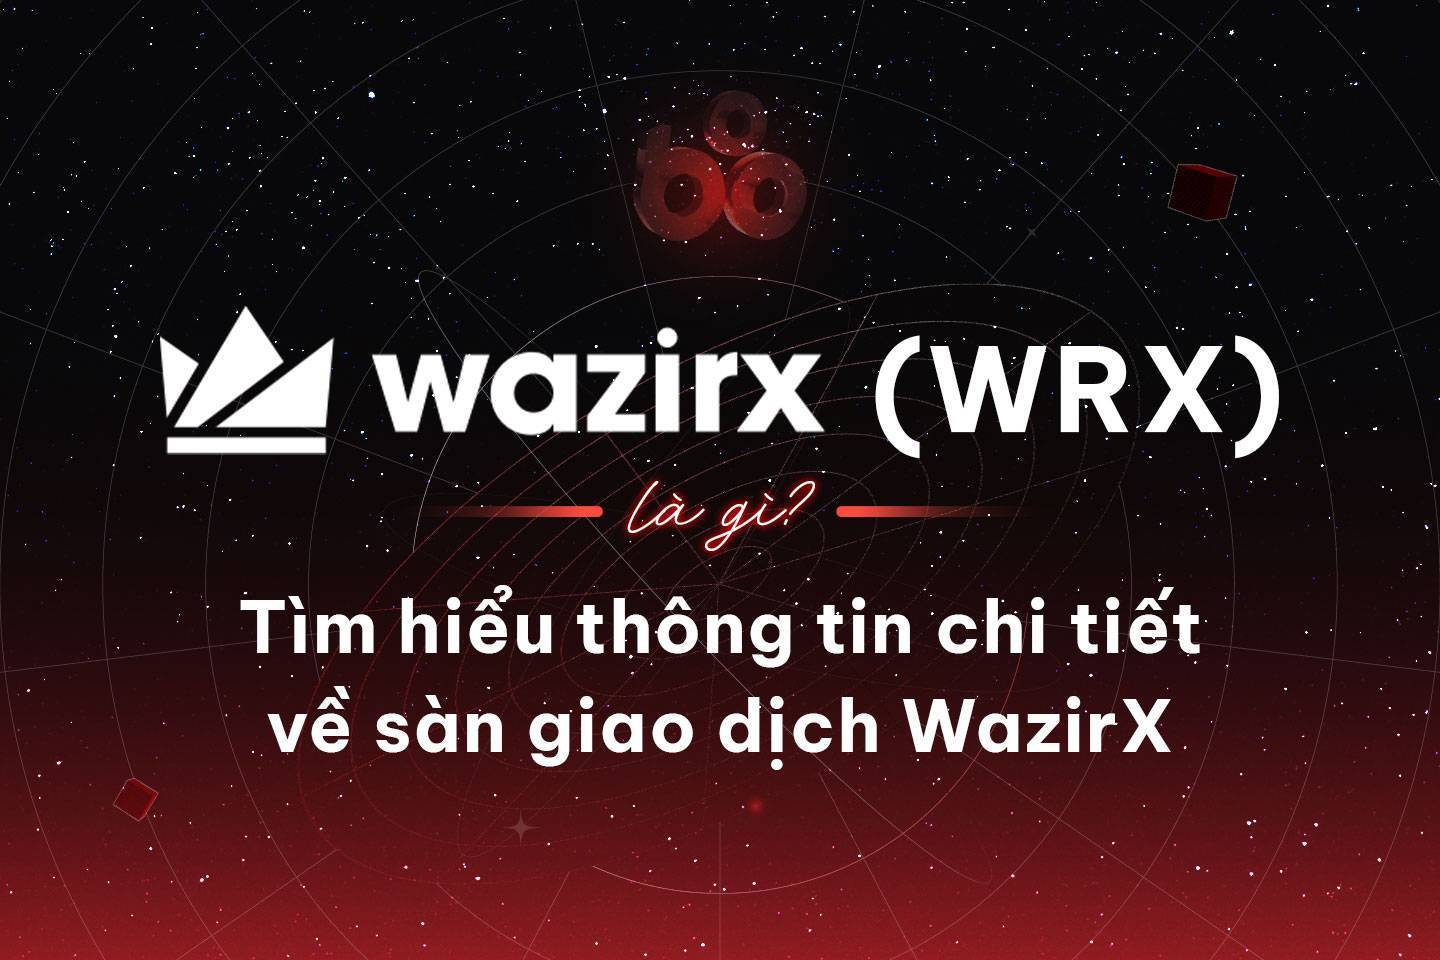 Wazirx wrx Là Gì Tìm Hiểu Thông Tin Chi Tiết Về Sàn Giao Dịch Wazirx